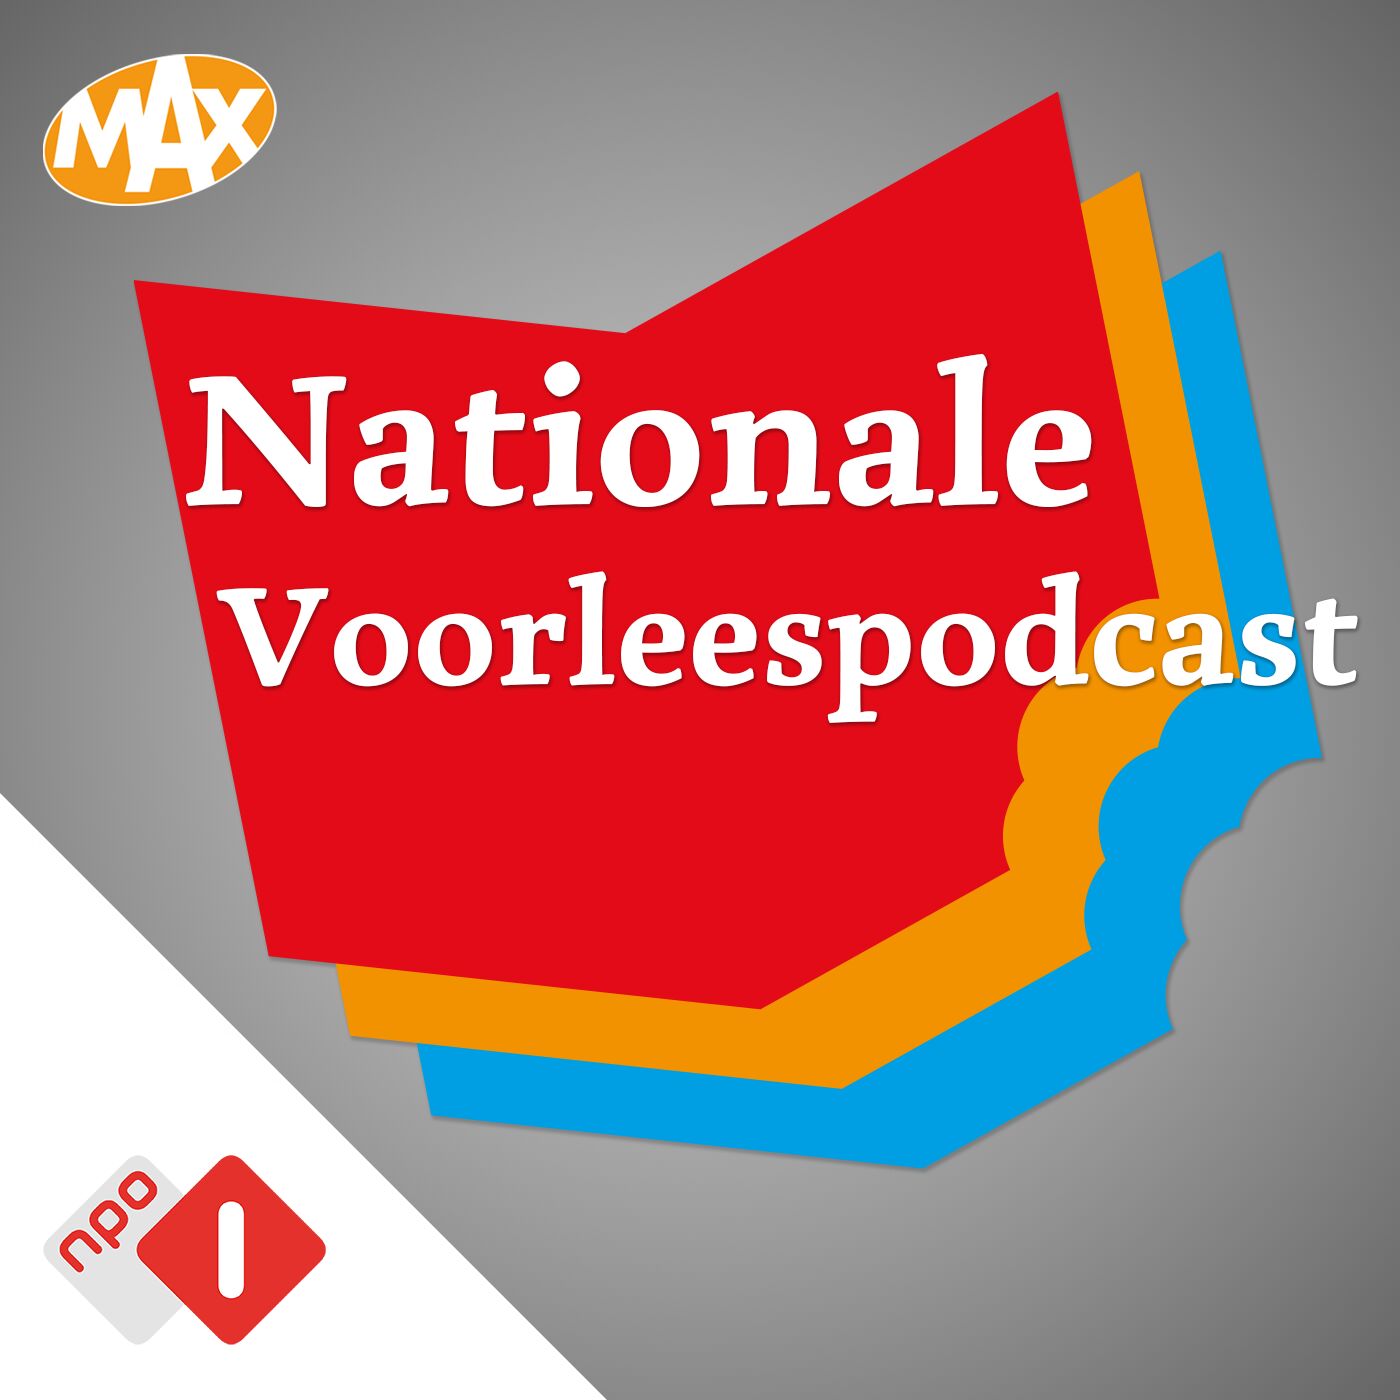 Nationale Voorleespodcast logo